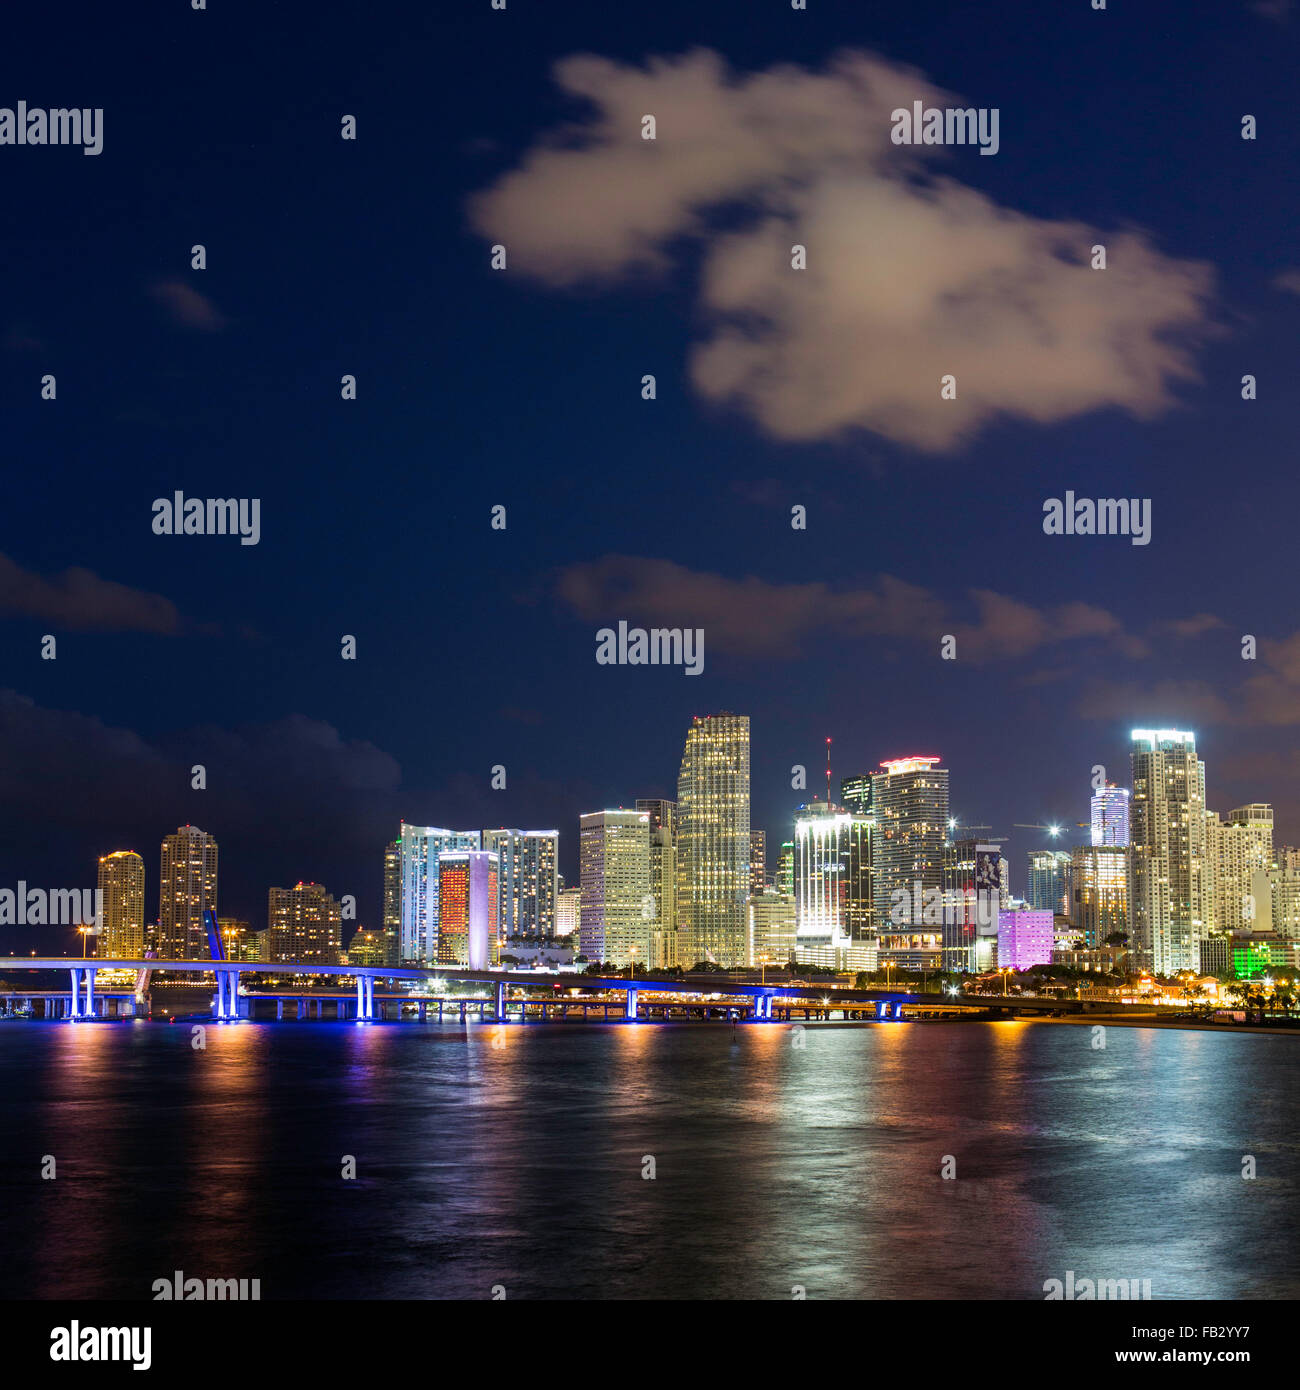 Le centre-ville de Miami waterfront skyline at night, Miami, Floride, USA, Amérique du Nord Banque D'Images